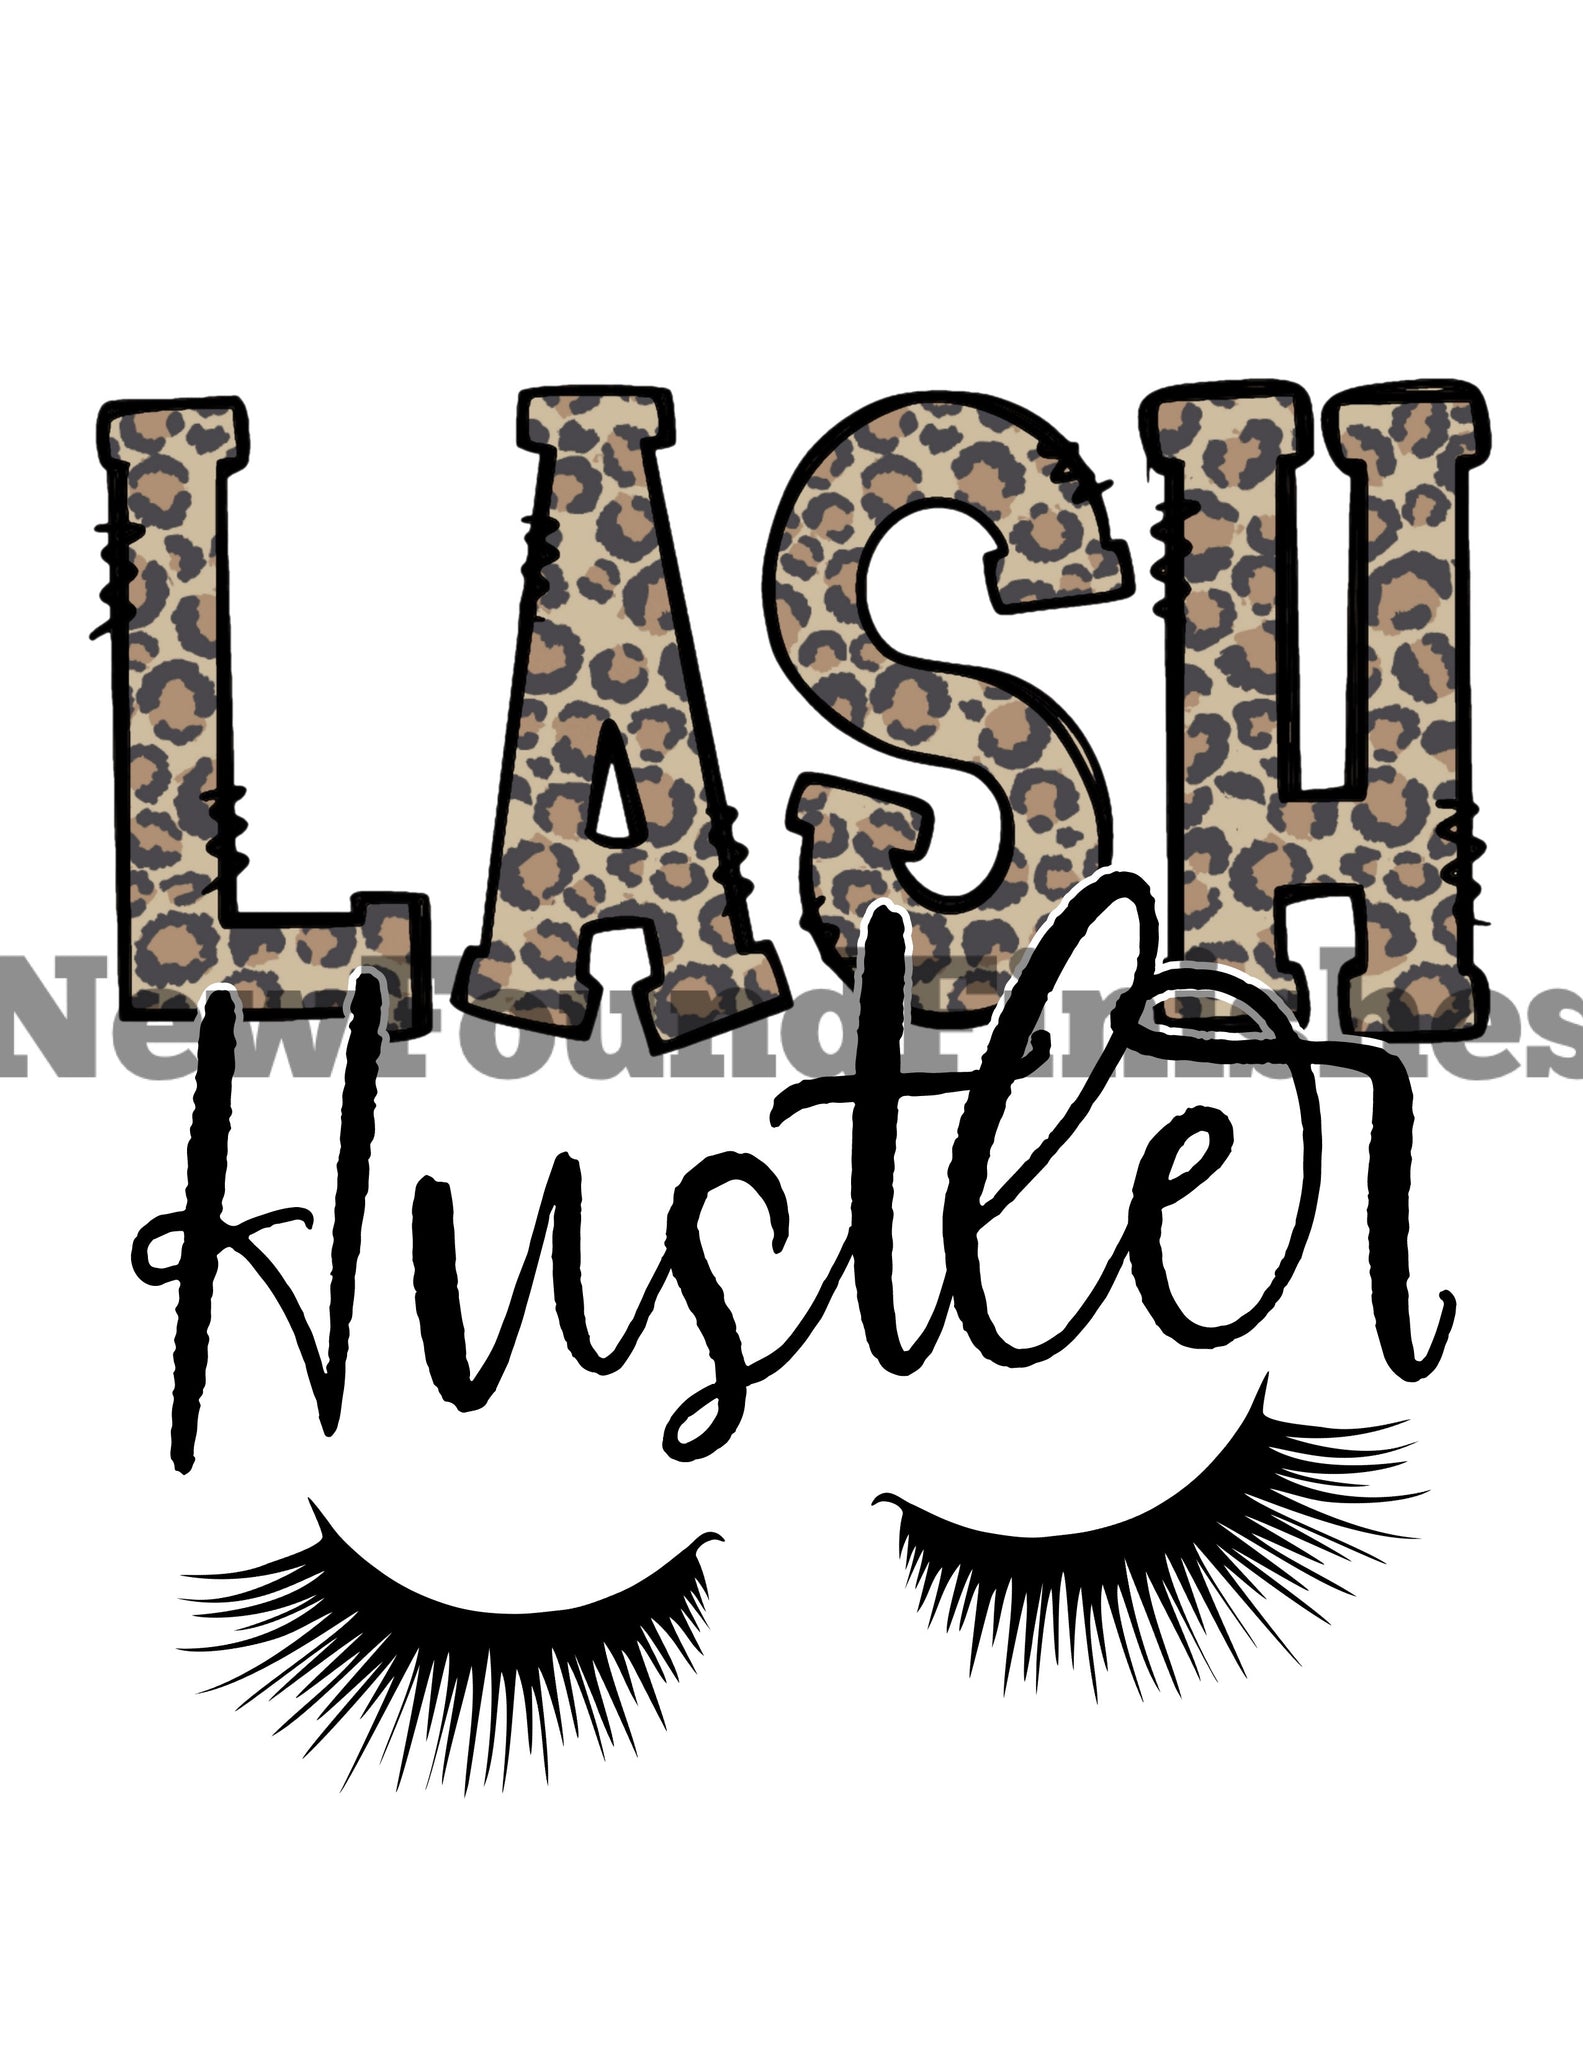 Lash hustler